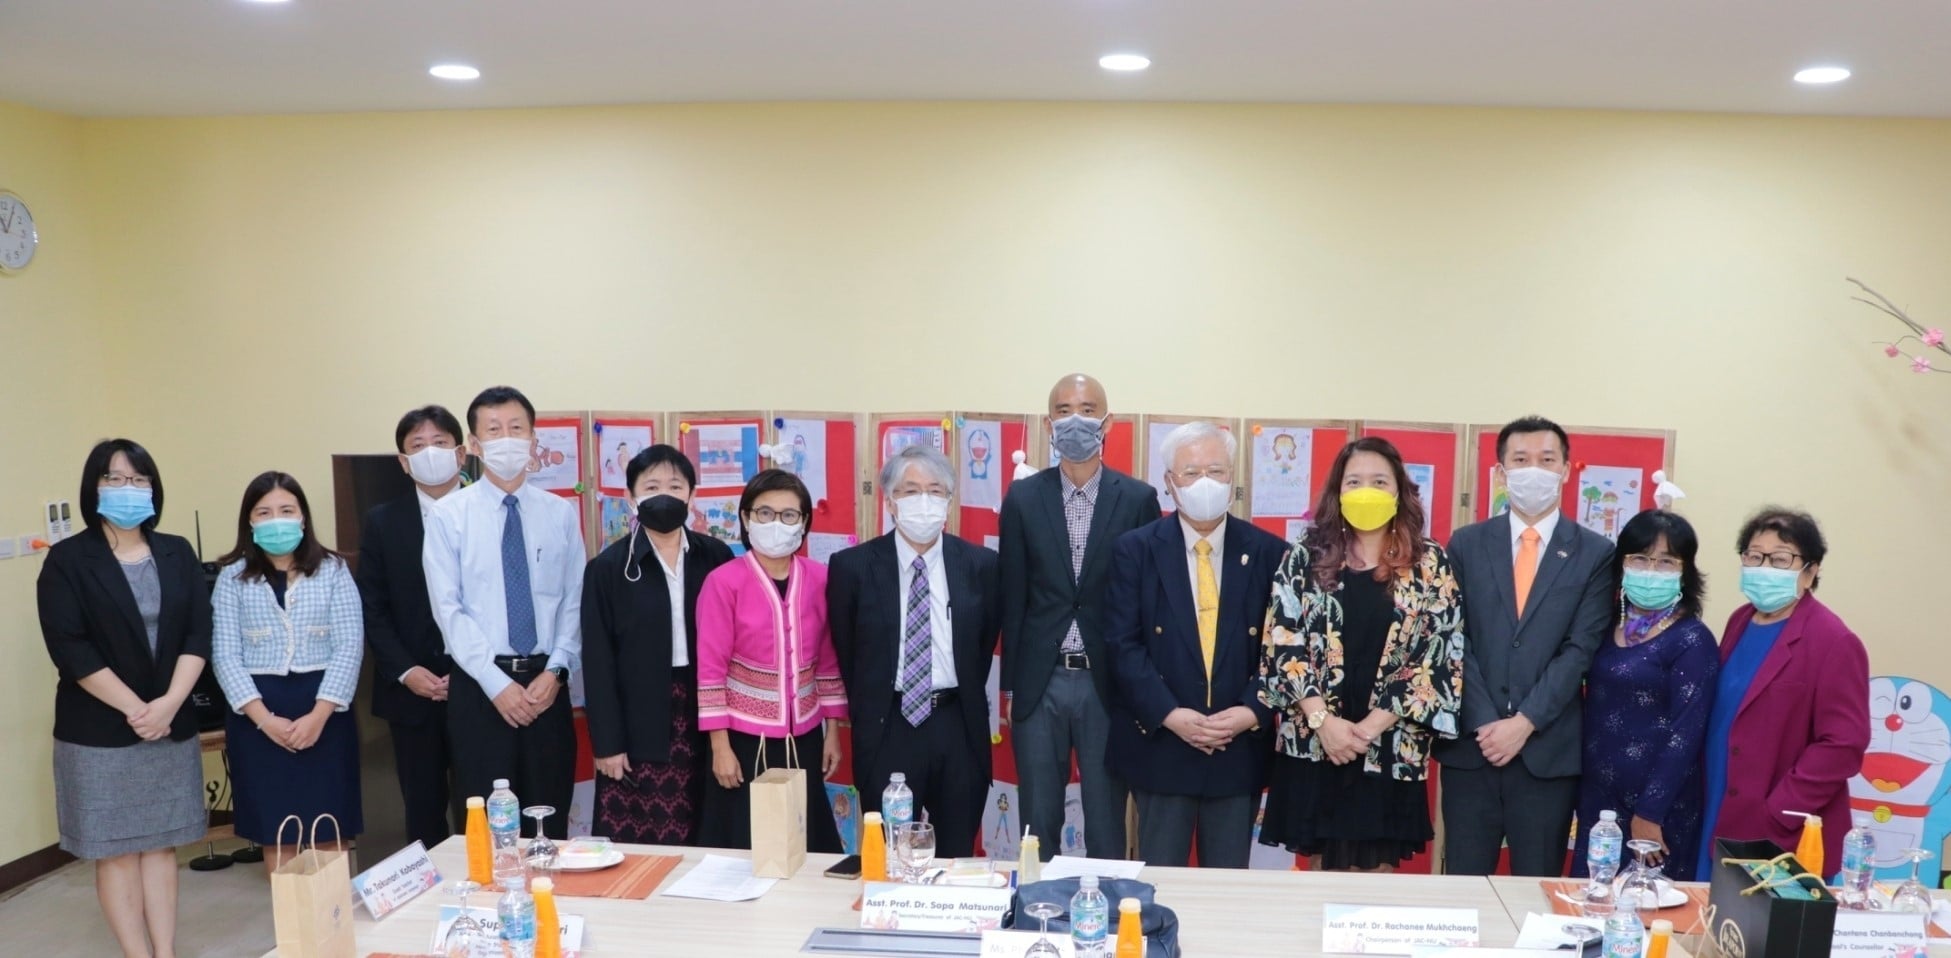 สถานทูตญี่ปุ่นให้เกียรติเยี่ยมโรงเรียนสาธิตฯ (อนุบาลและประถมศึกษา)